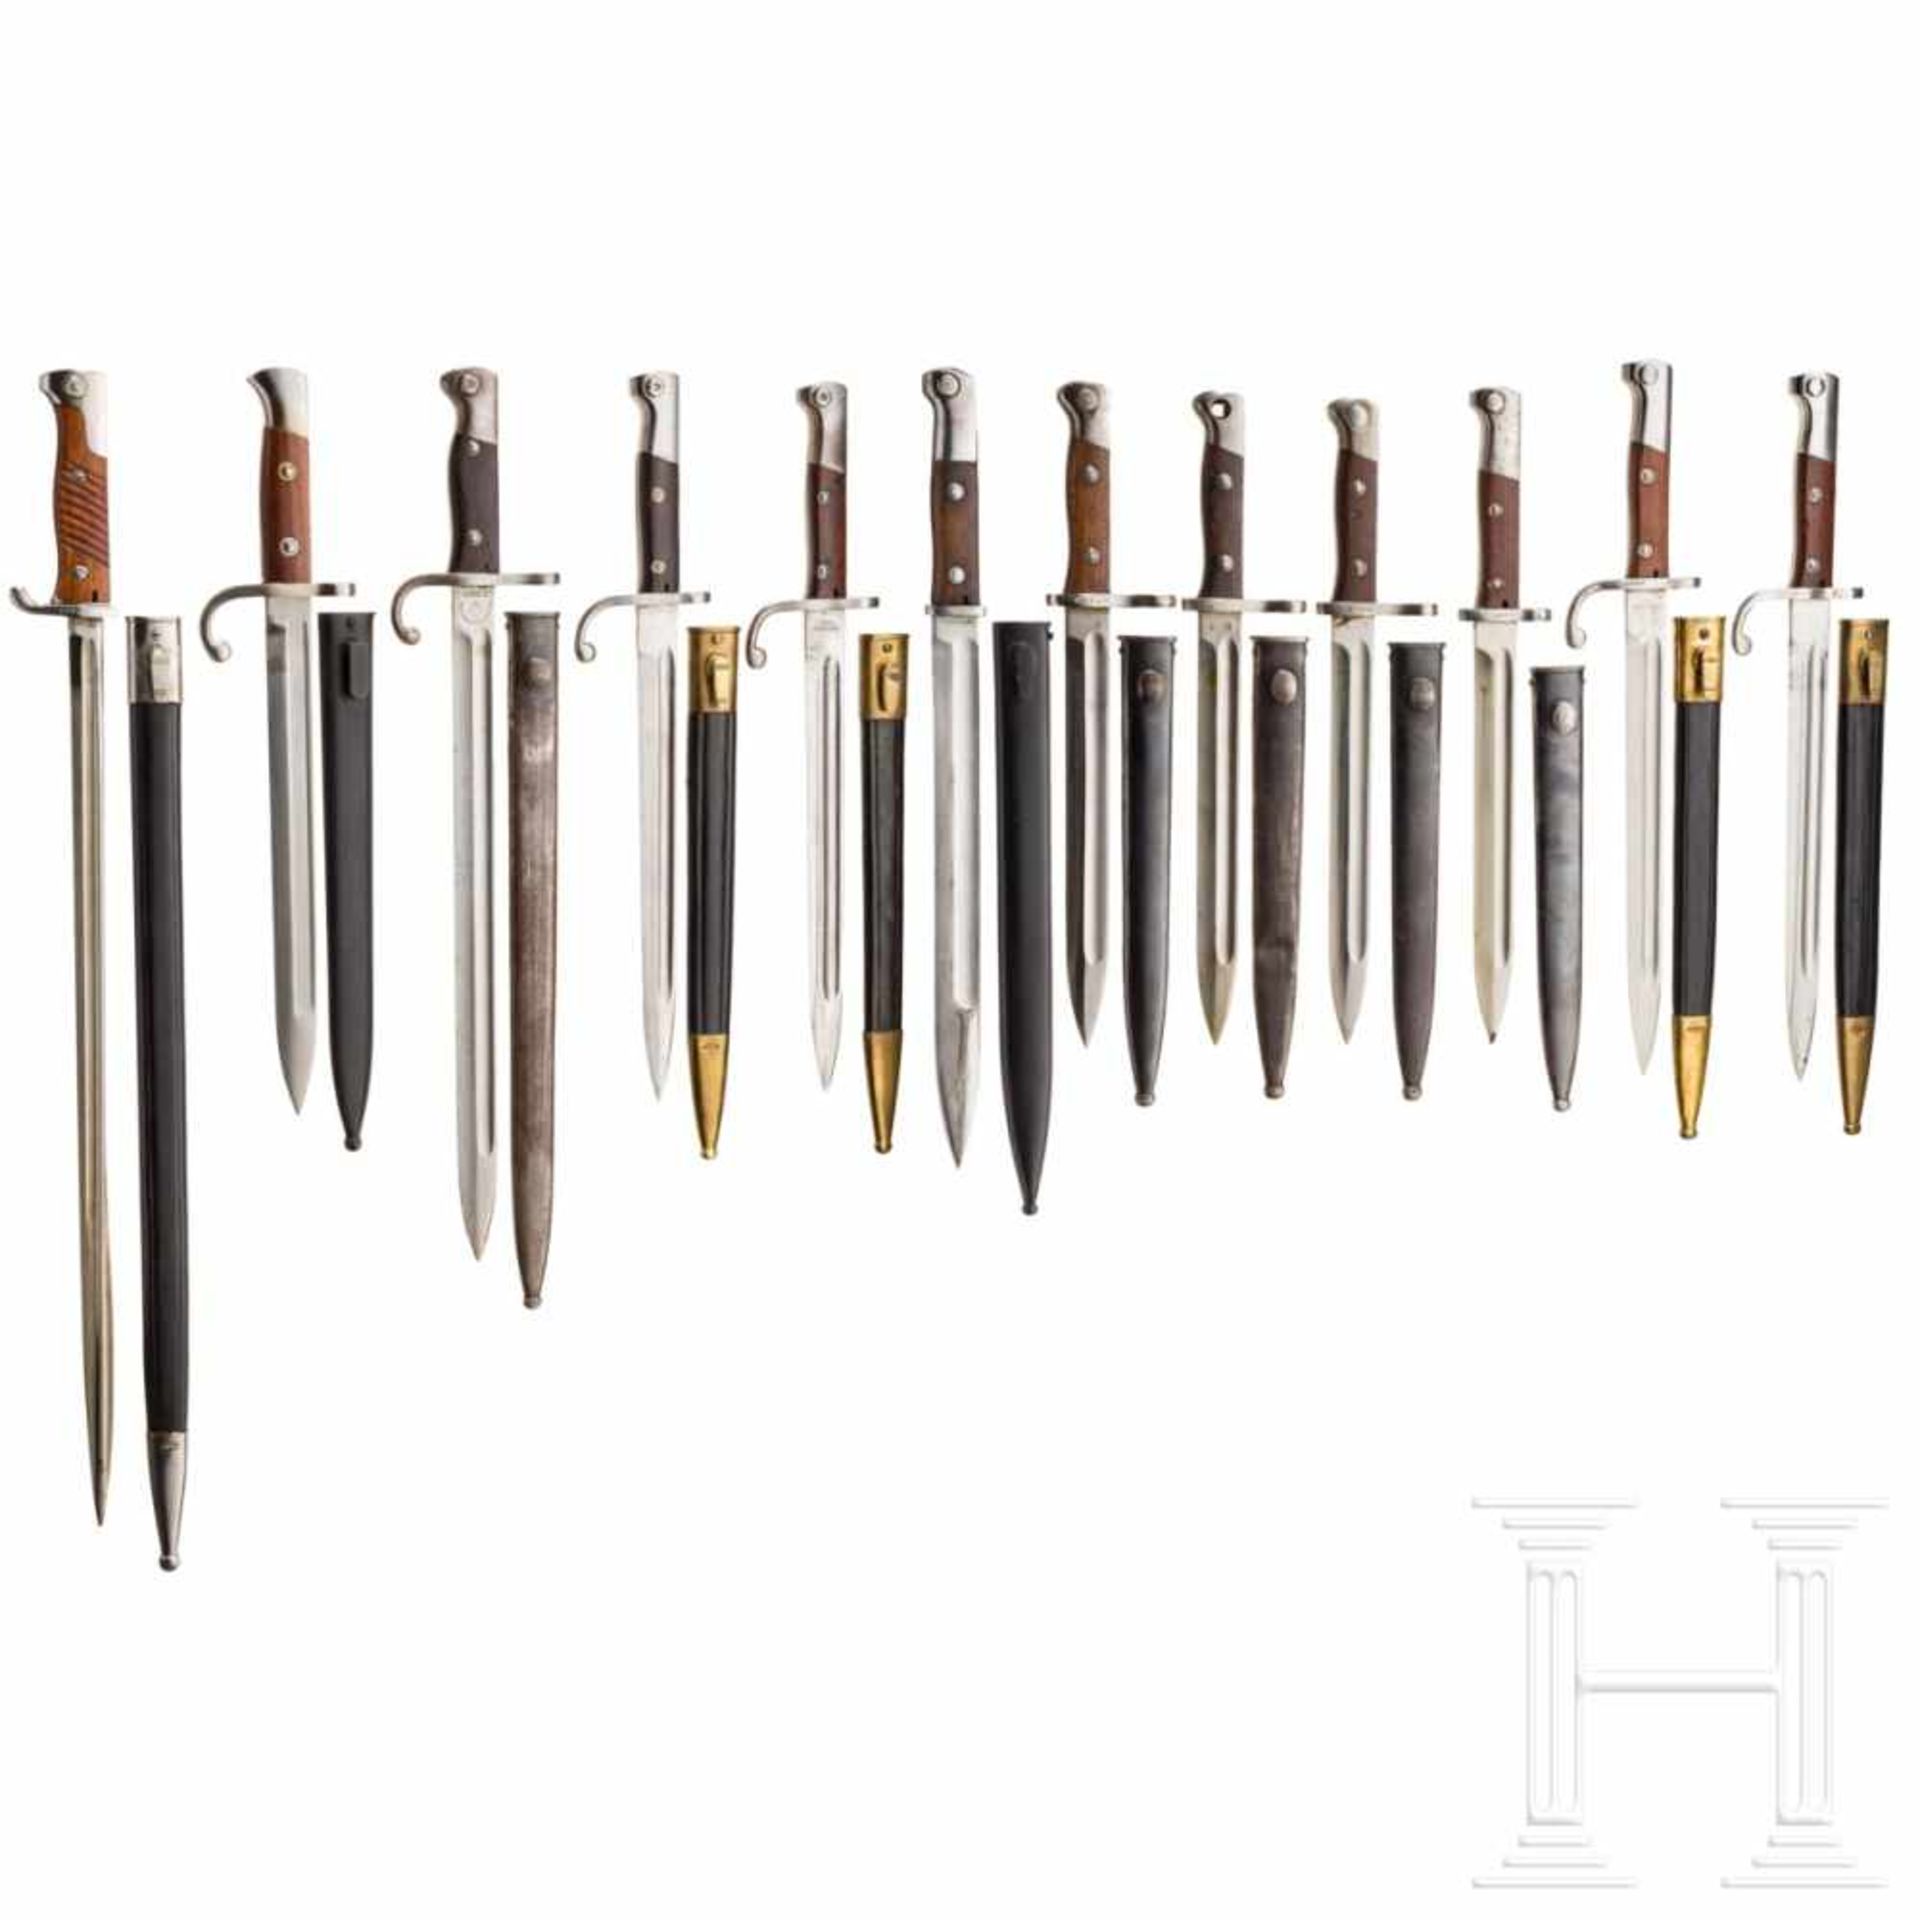 South America - twelve bayonets (Simson, Weyersberg, OEWG)Ein schön erhaltenes peruanisches Bajonett